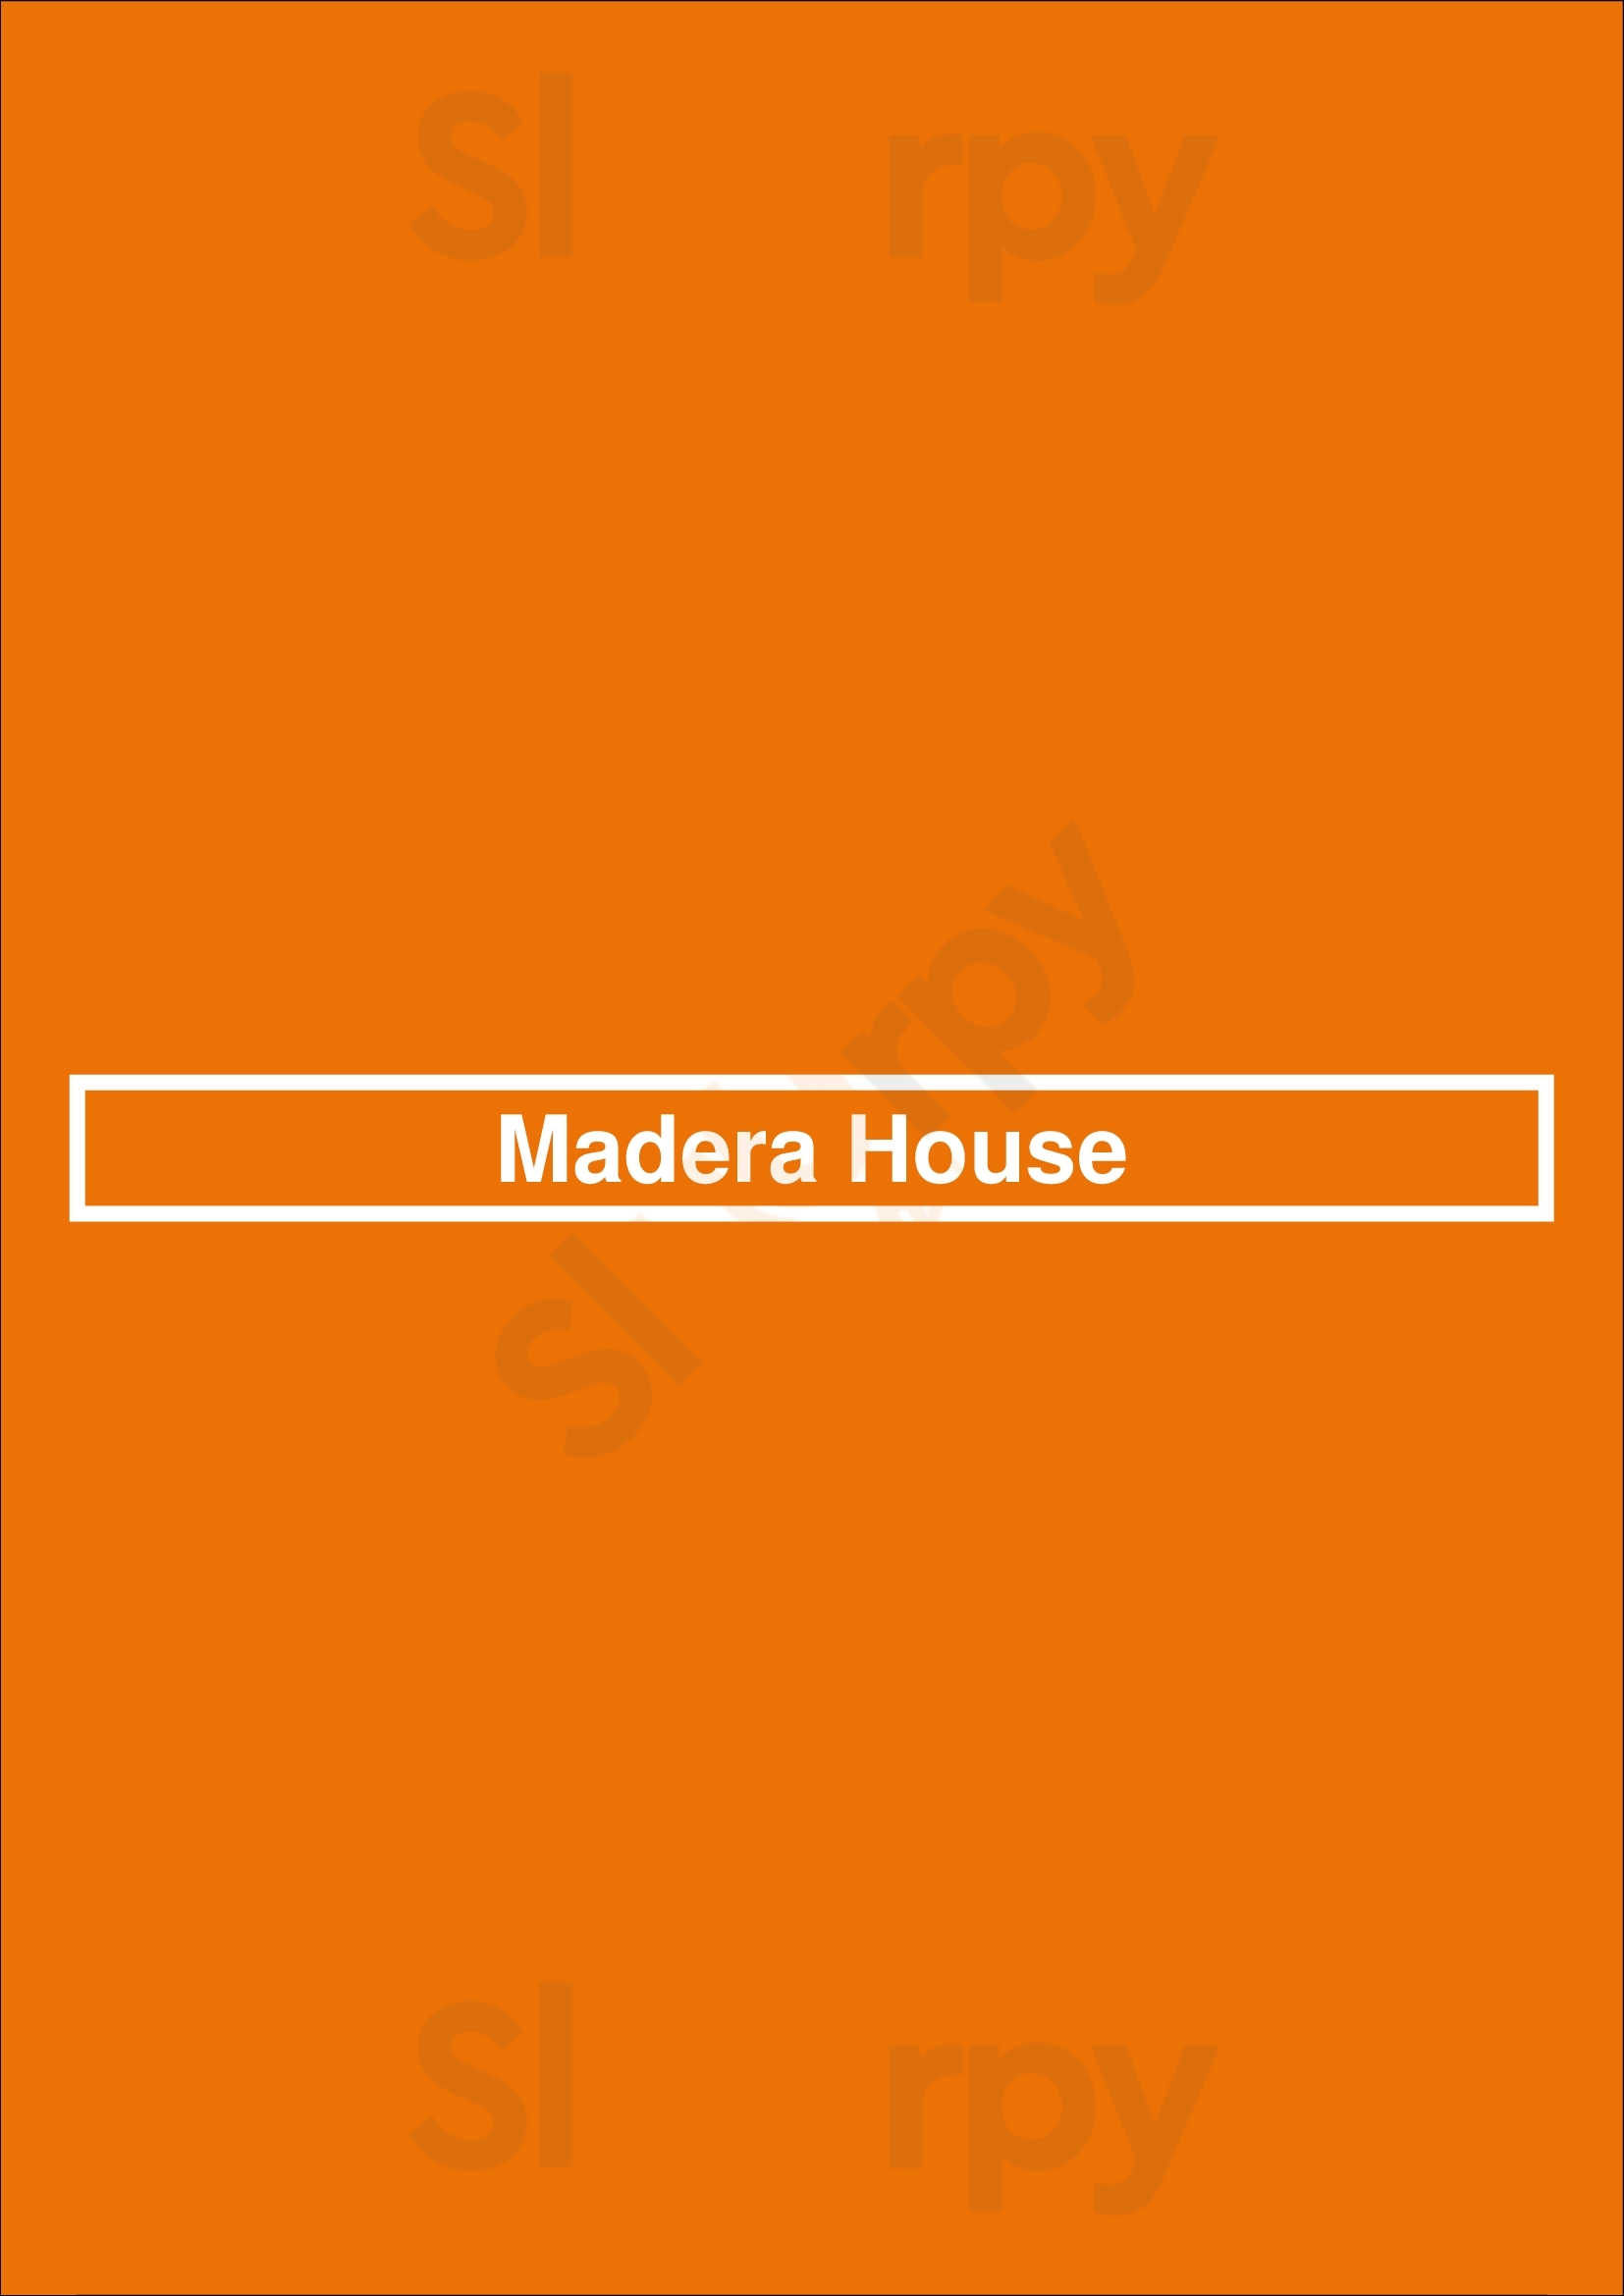 Madera House Rotterdam Menu - 1